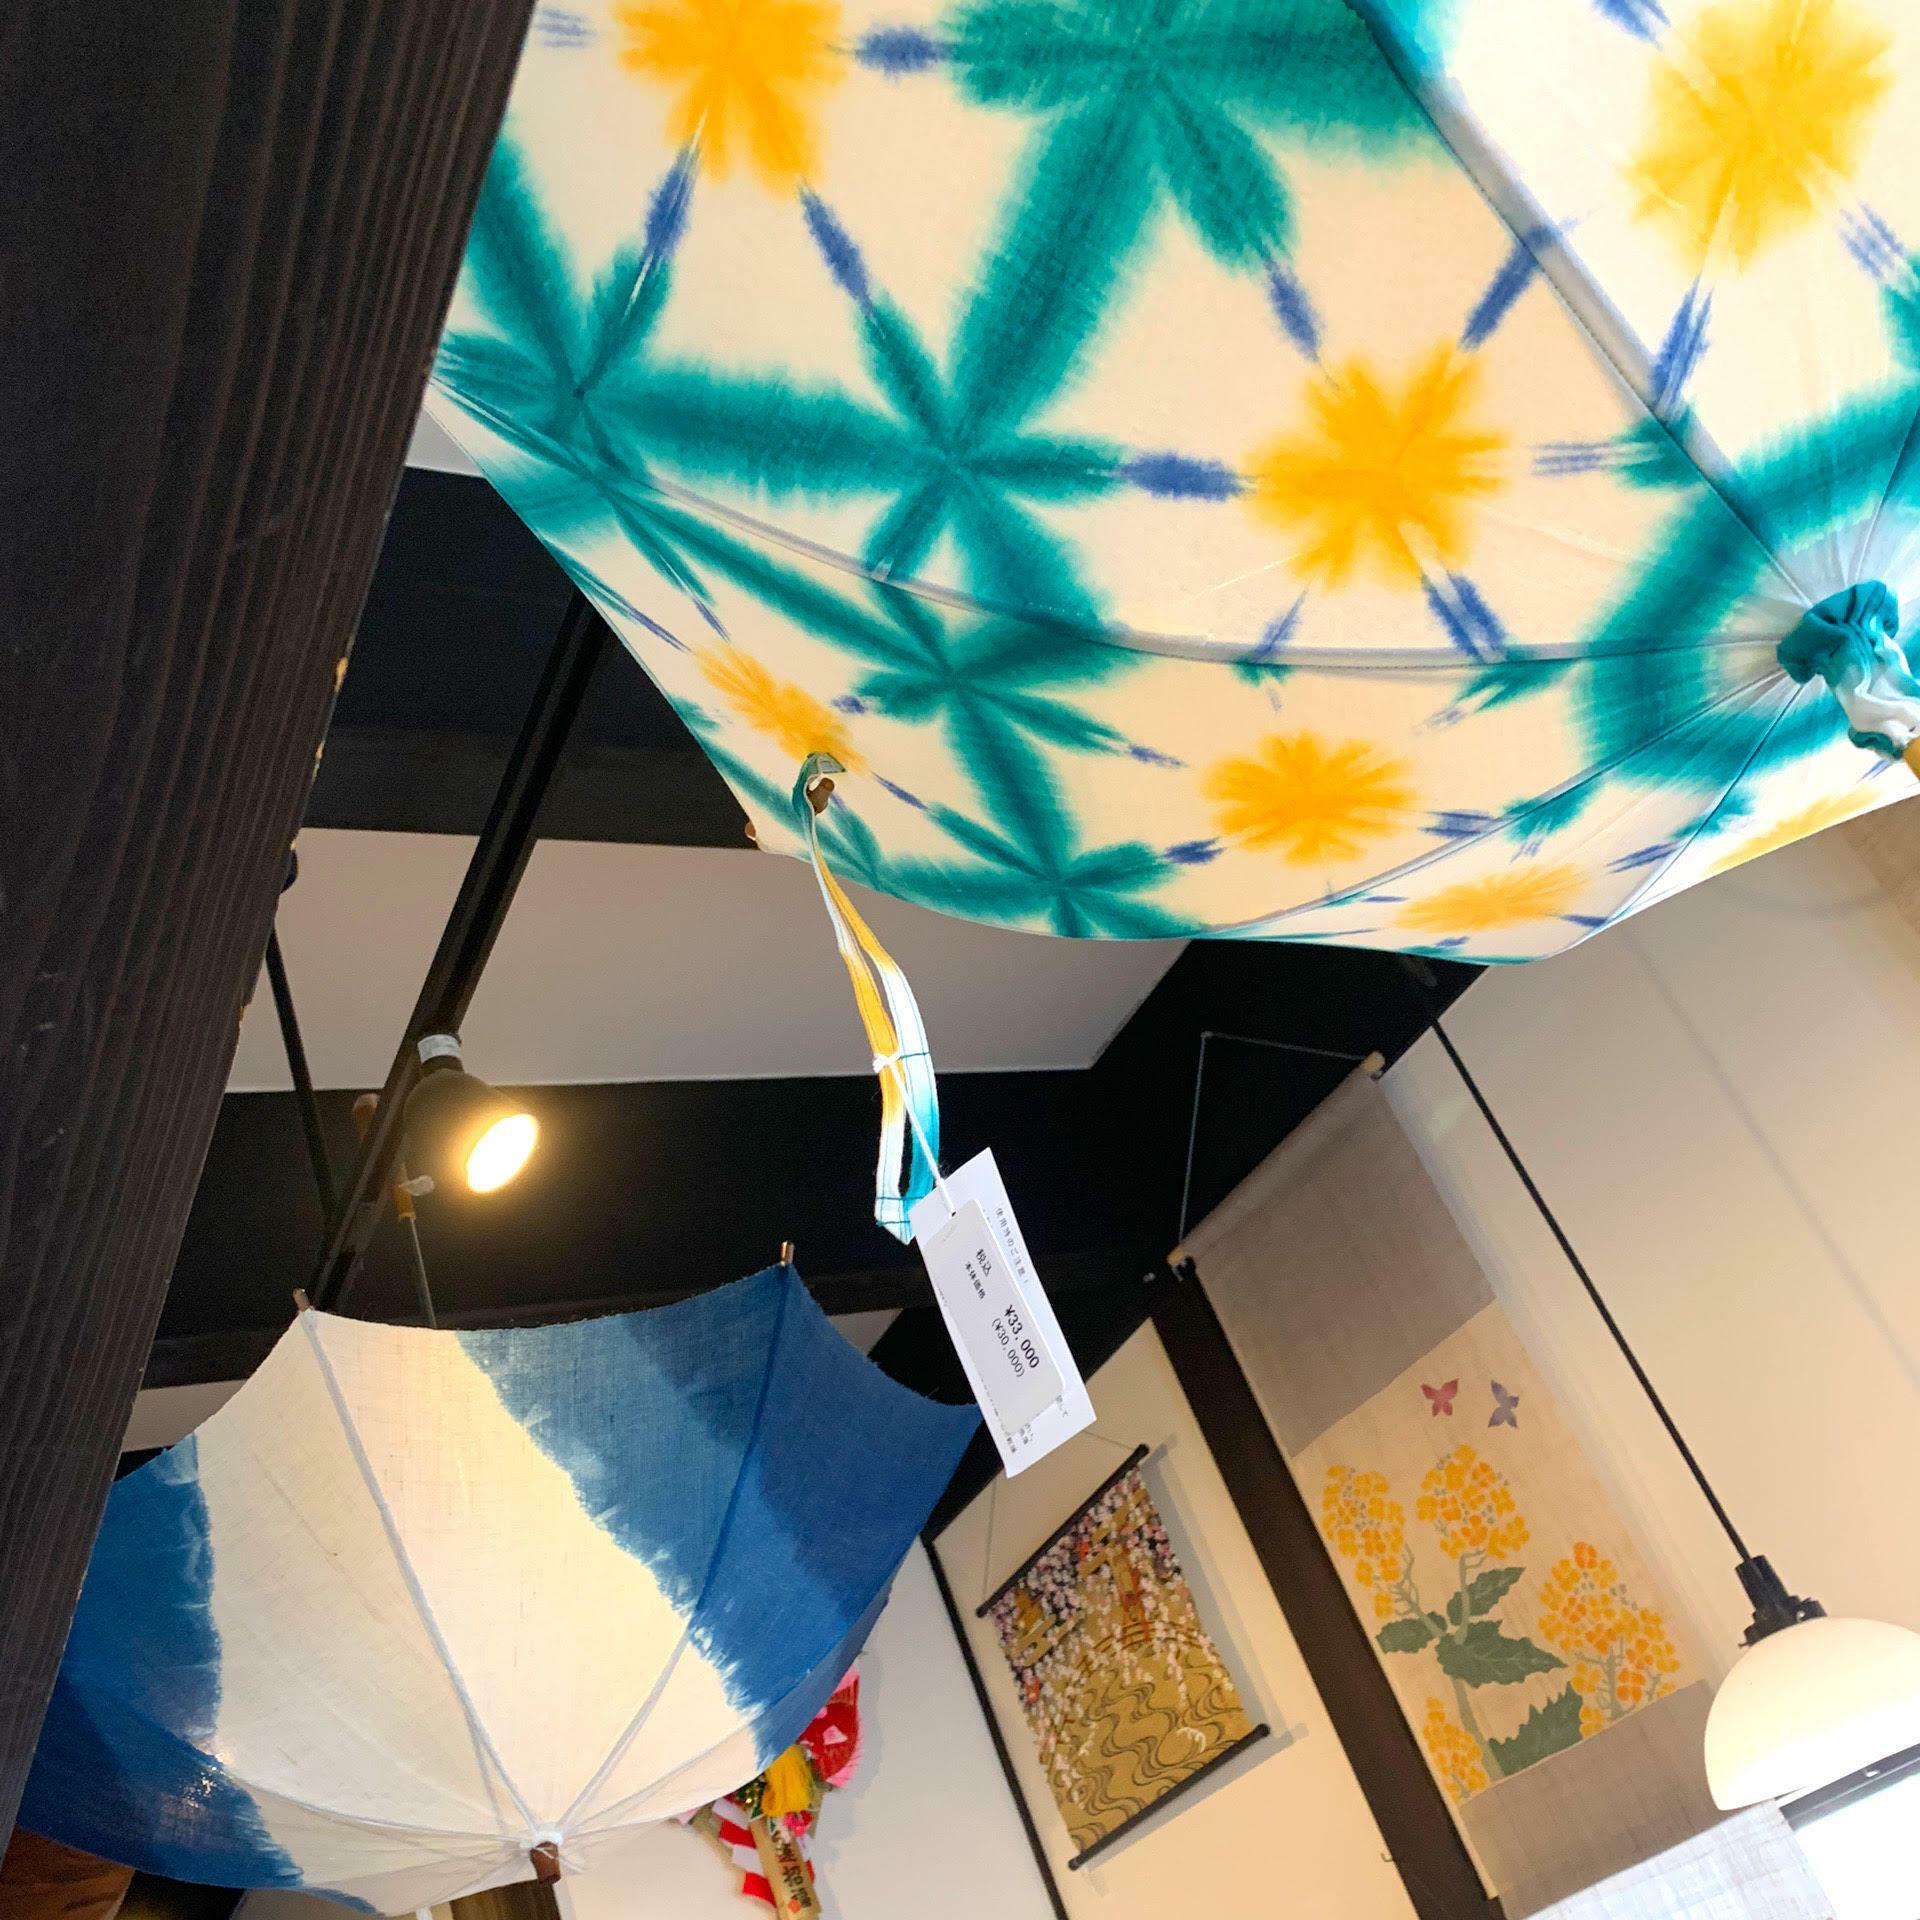 天井に飾られた美しい日傘たち。